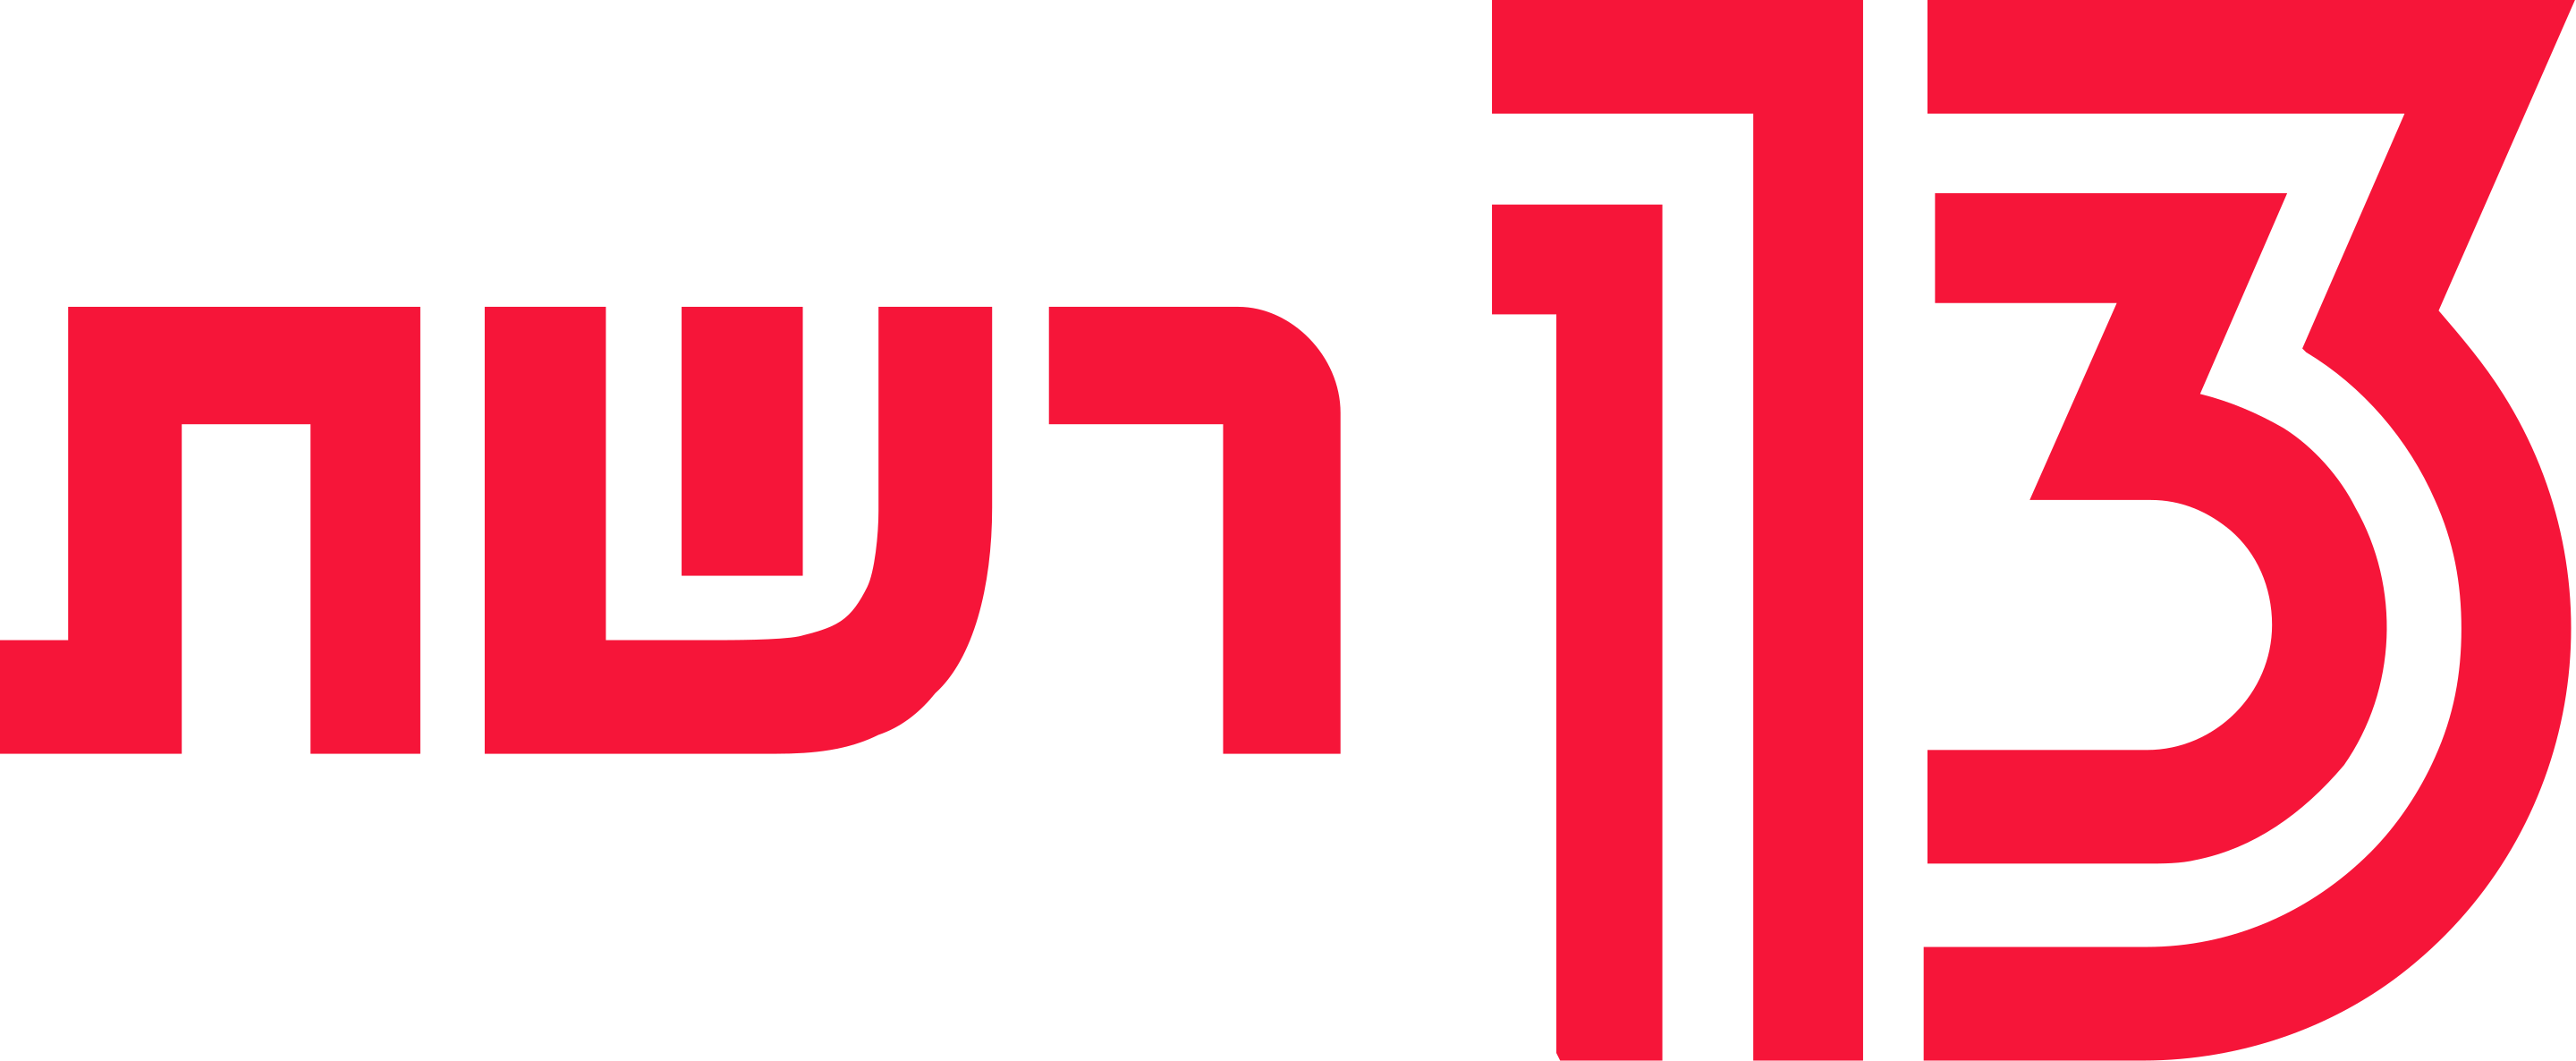 Reshet 13 TV Logo